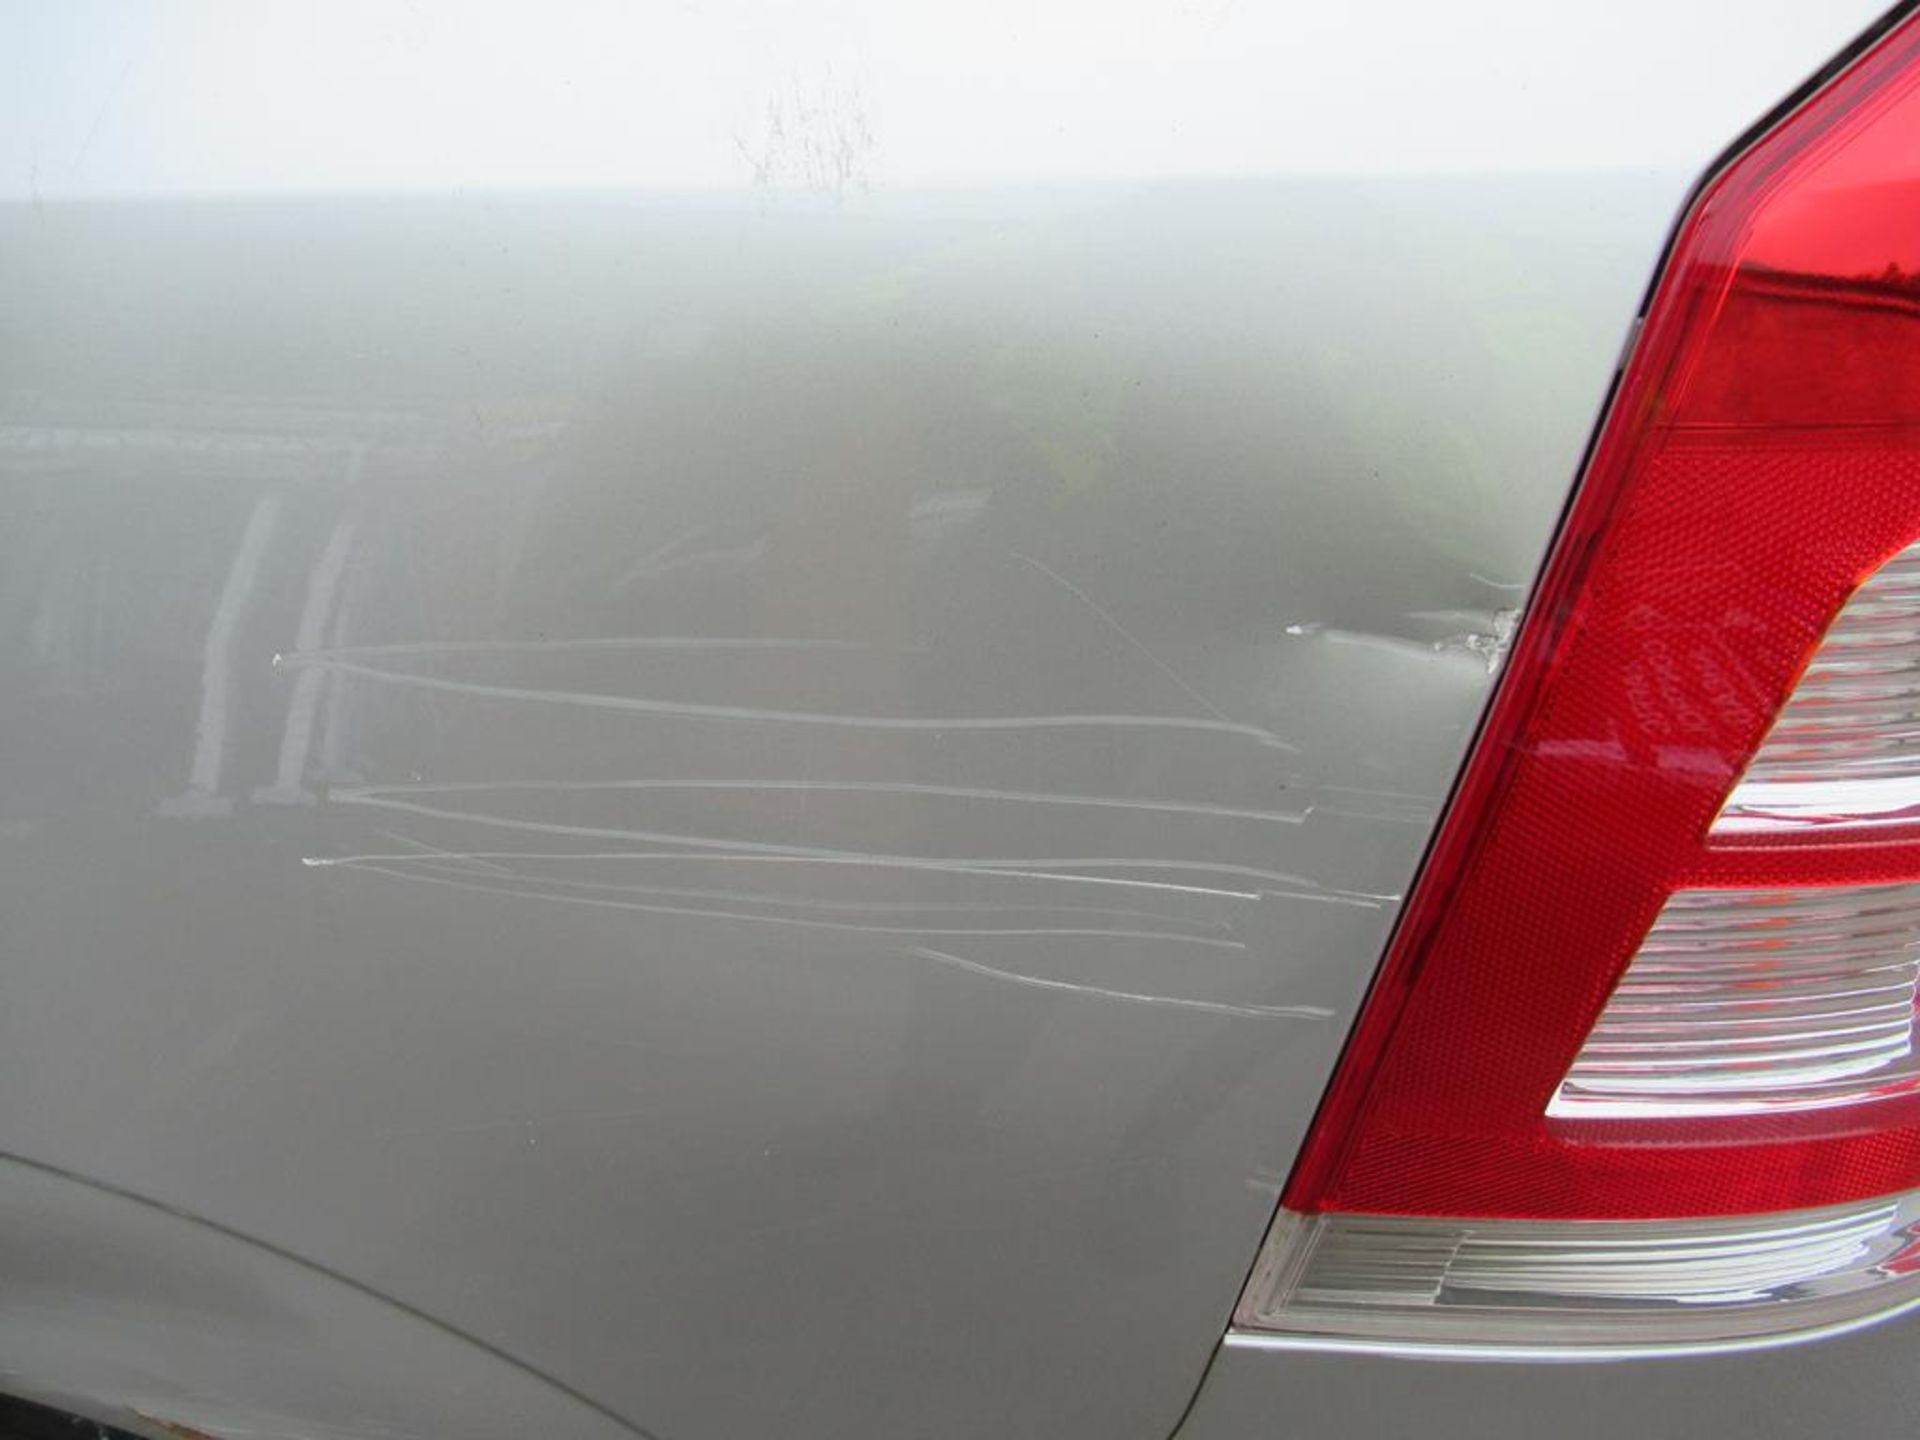 Vauxhall Zafira 1.7 CDTi MPV - Image 7 of 27